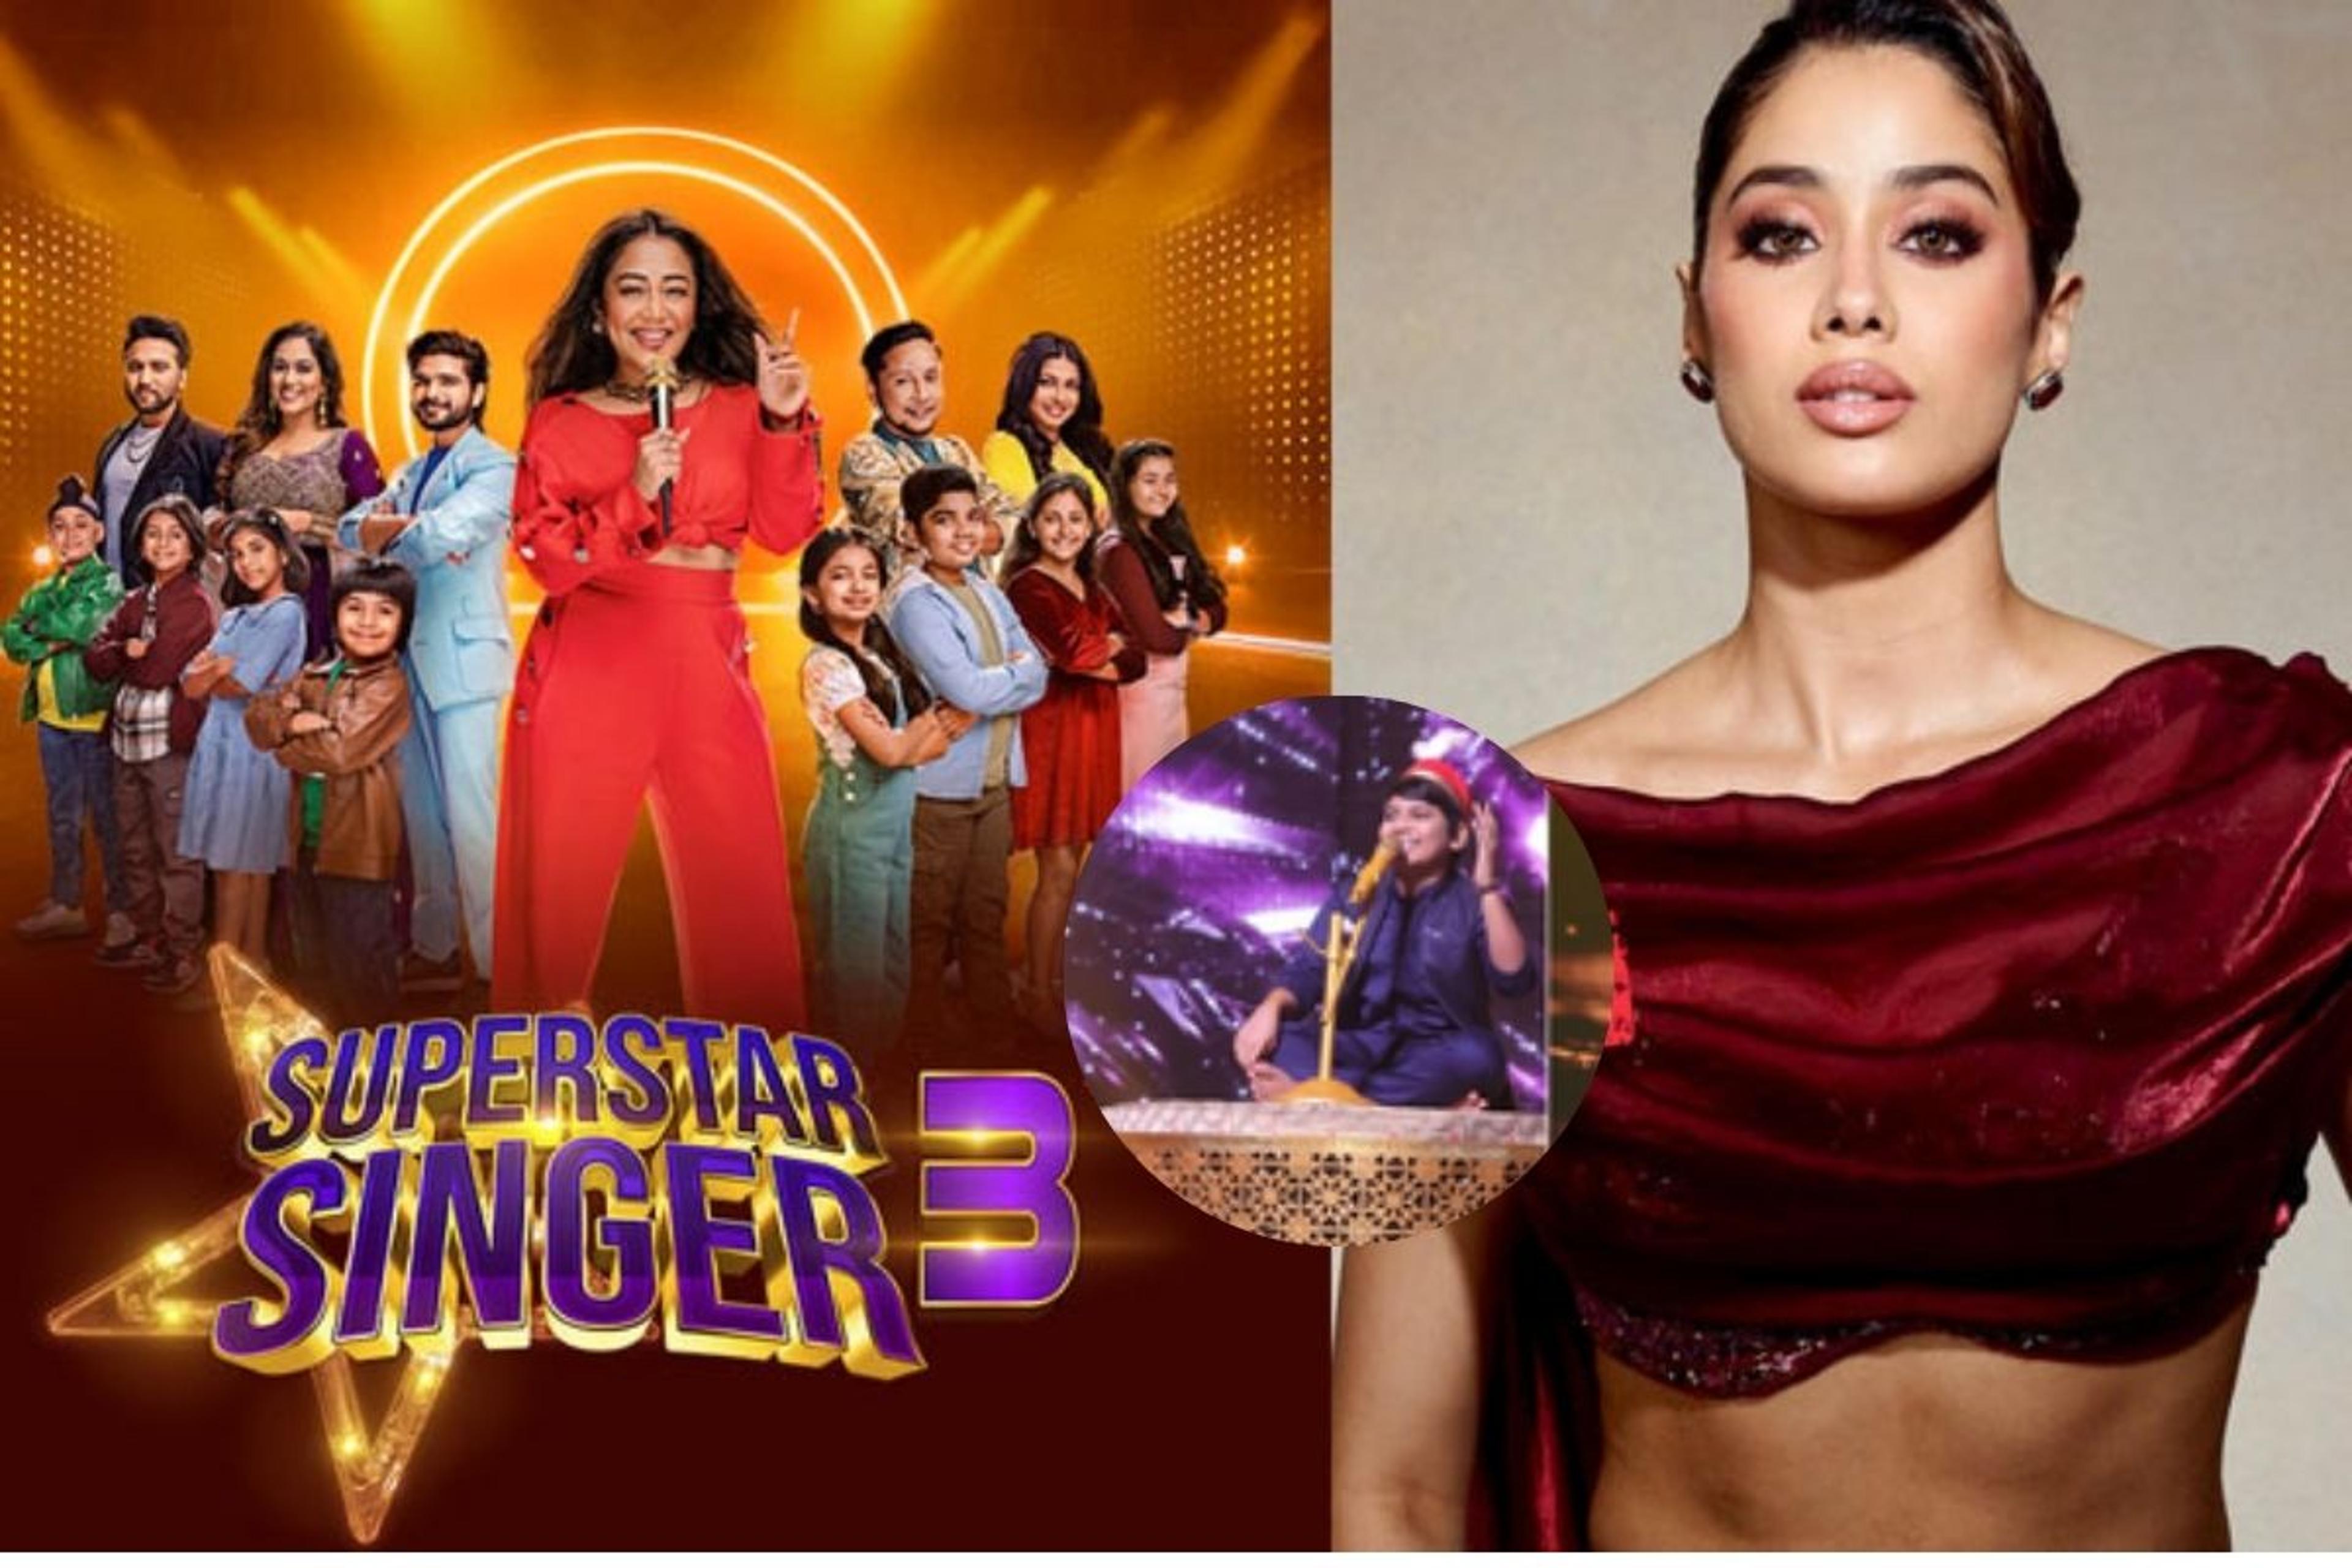 Superstar Singer 3: ‘सुपरस्टार सिंगर 3’ के कंटेस्टेंट की परफॉर्मेंस को देख
जान्हवी कपूर रह गईं हैरान